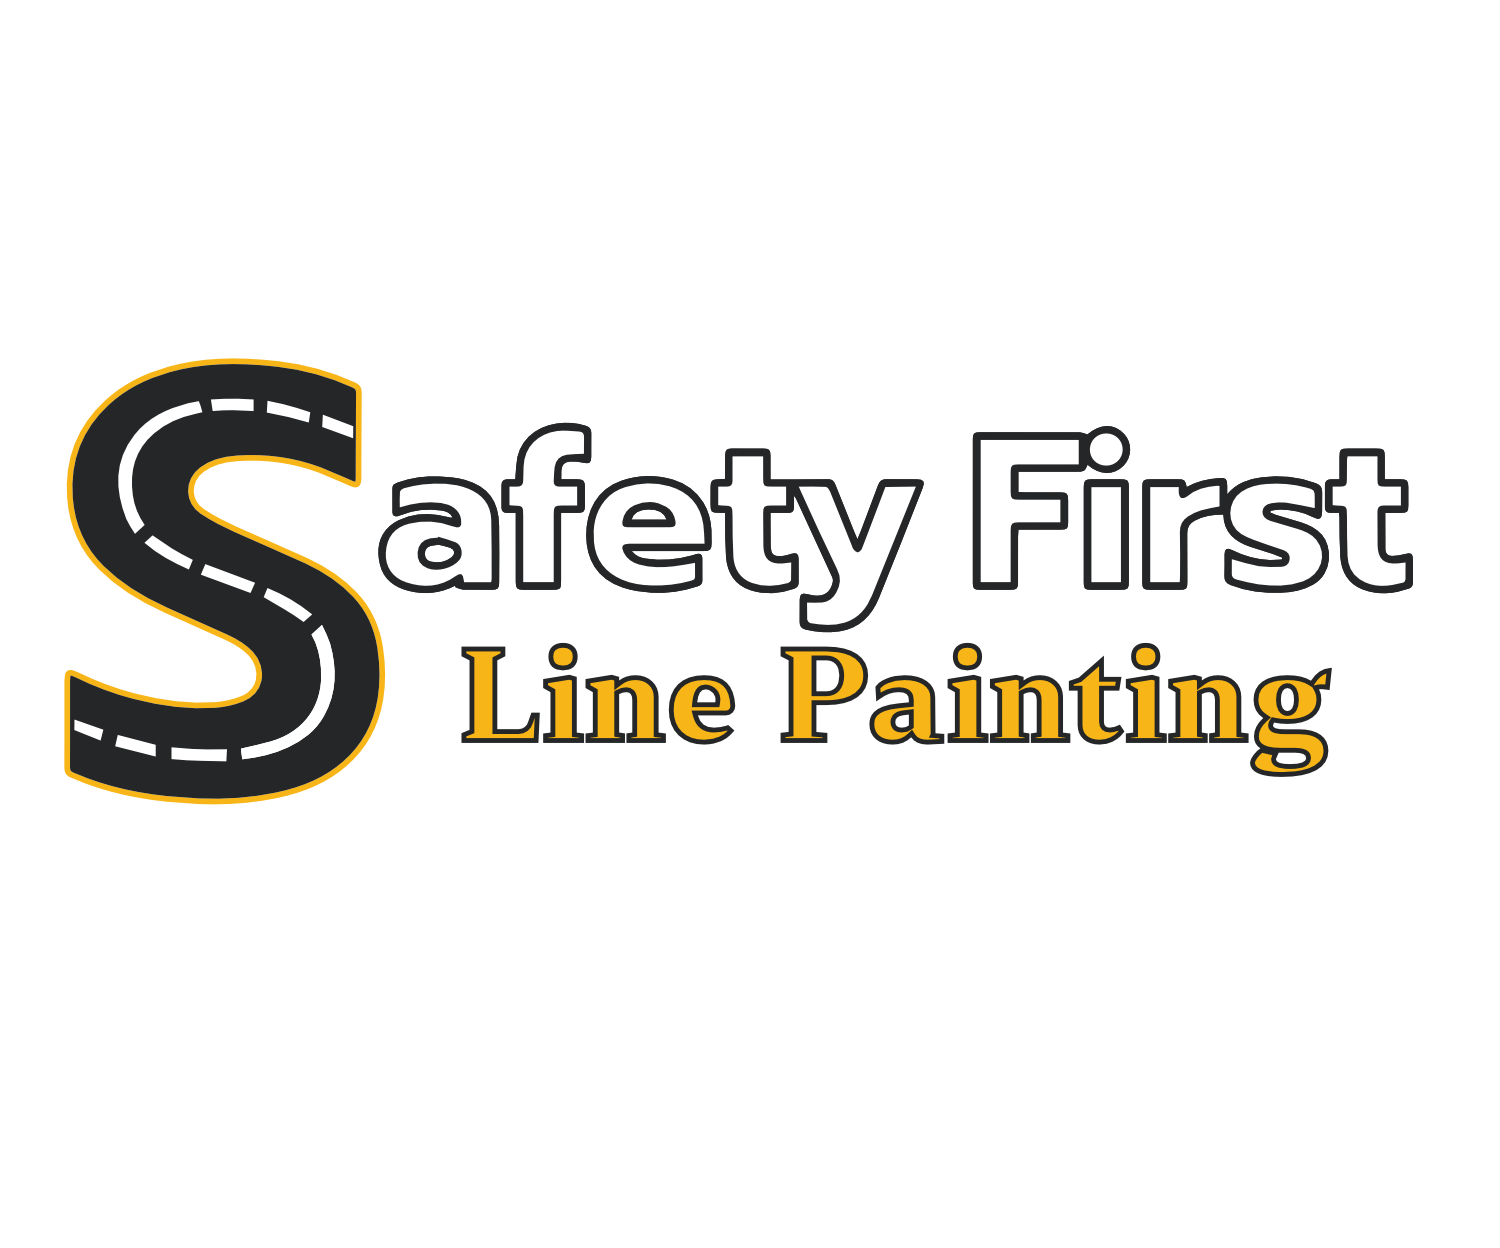 safety first logo